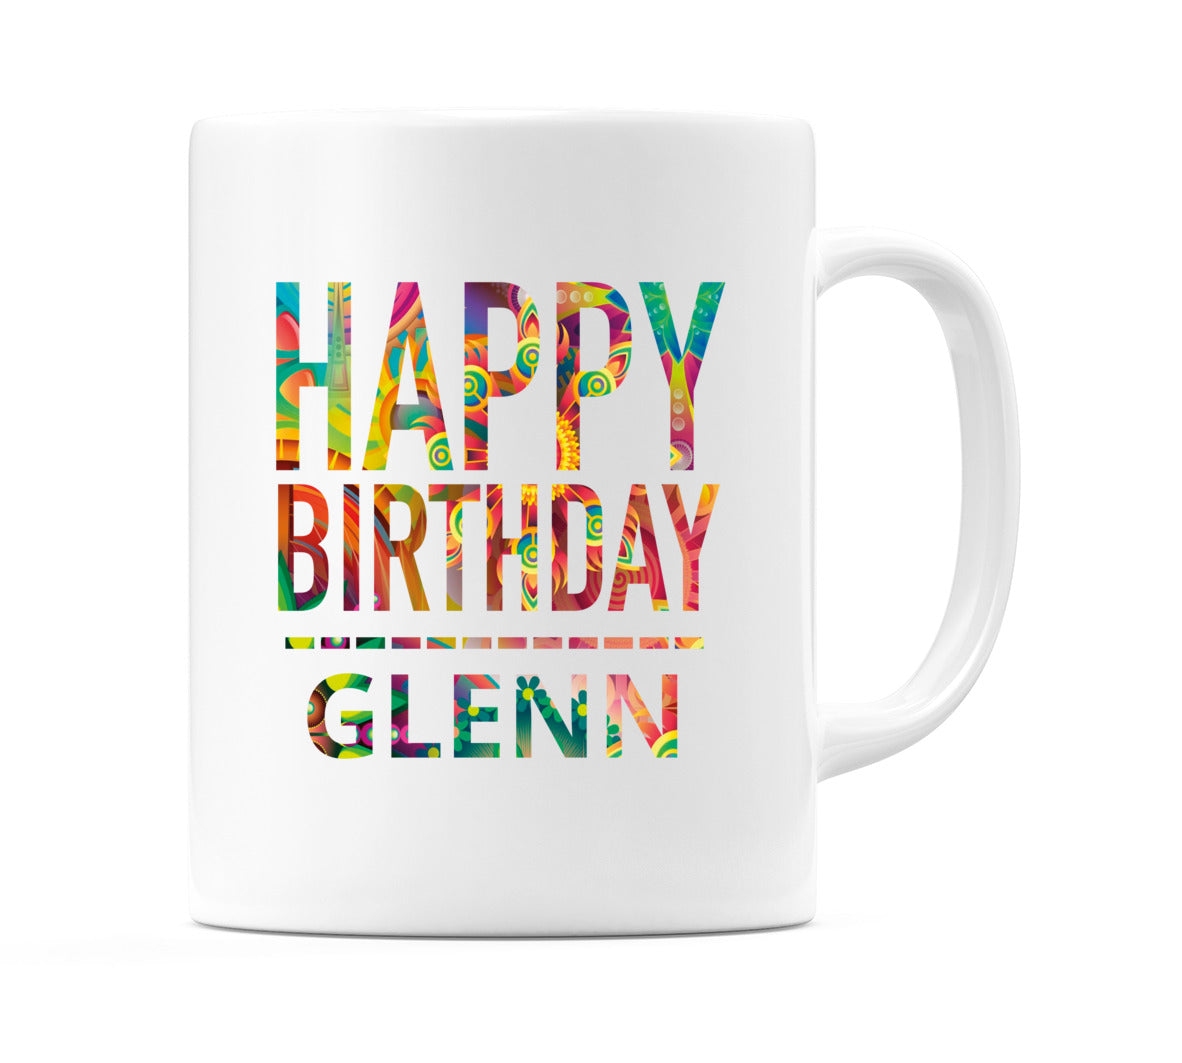 Happy Birthday Glenn (Tie Dye Effect) Mug Cup by WeDoMugs